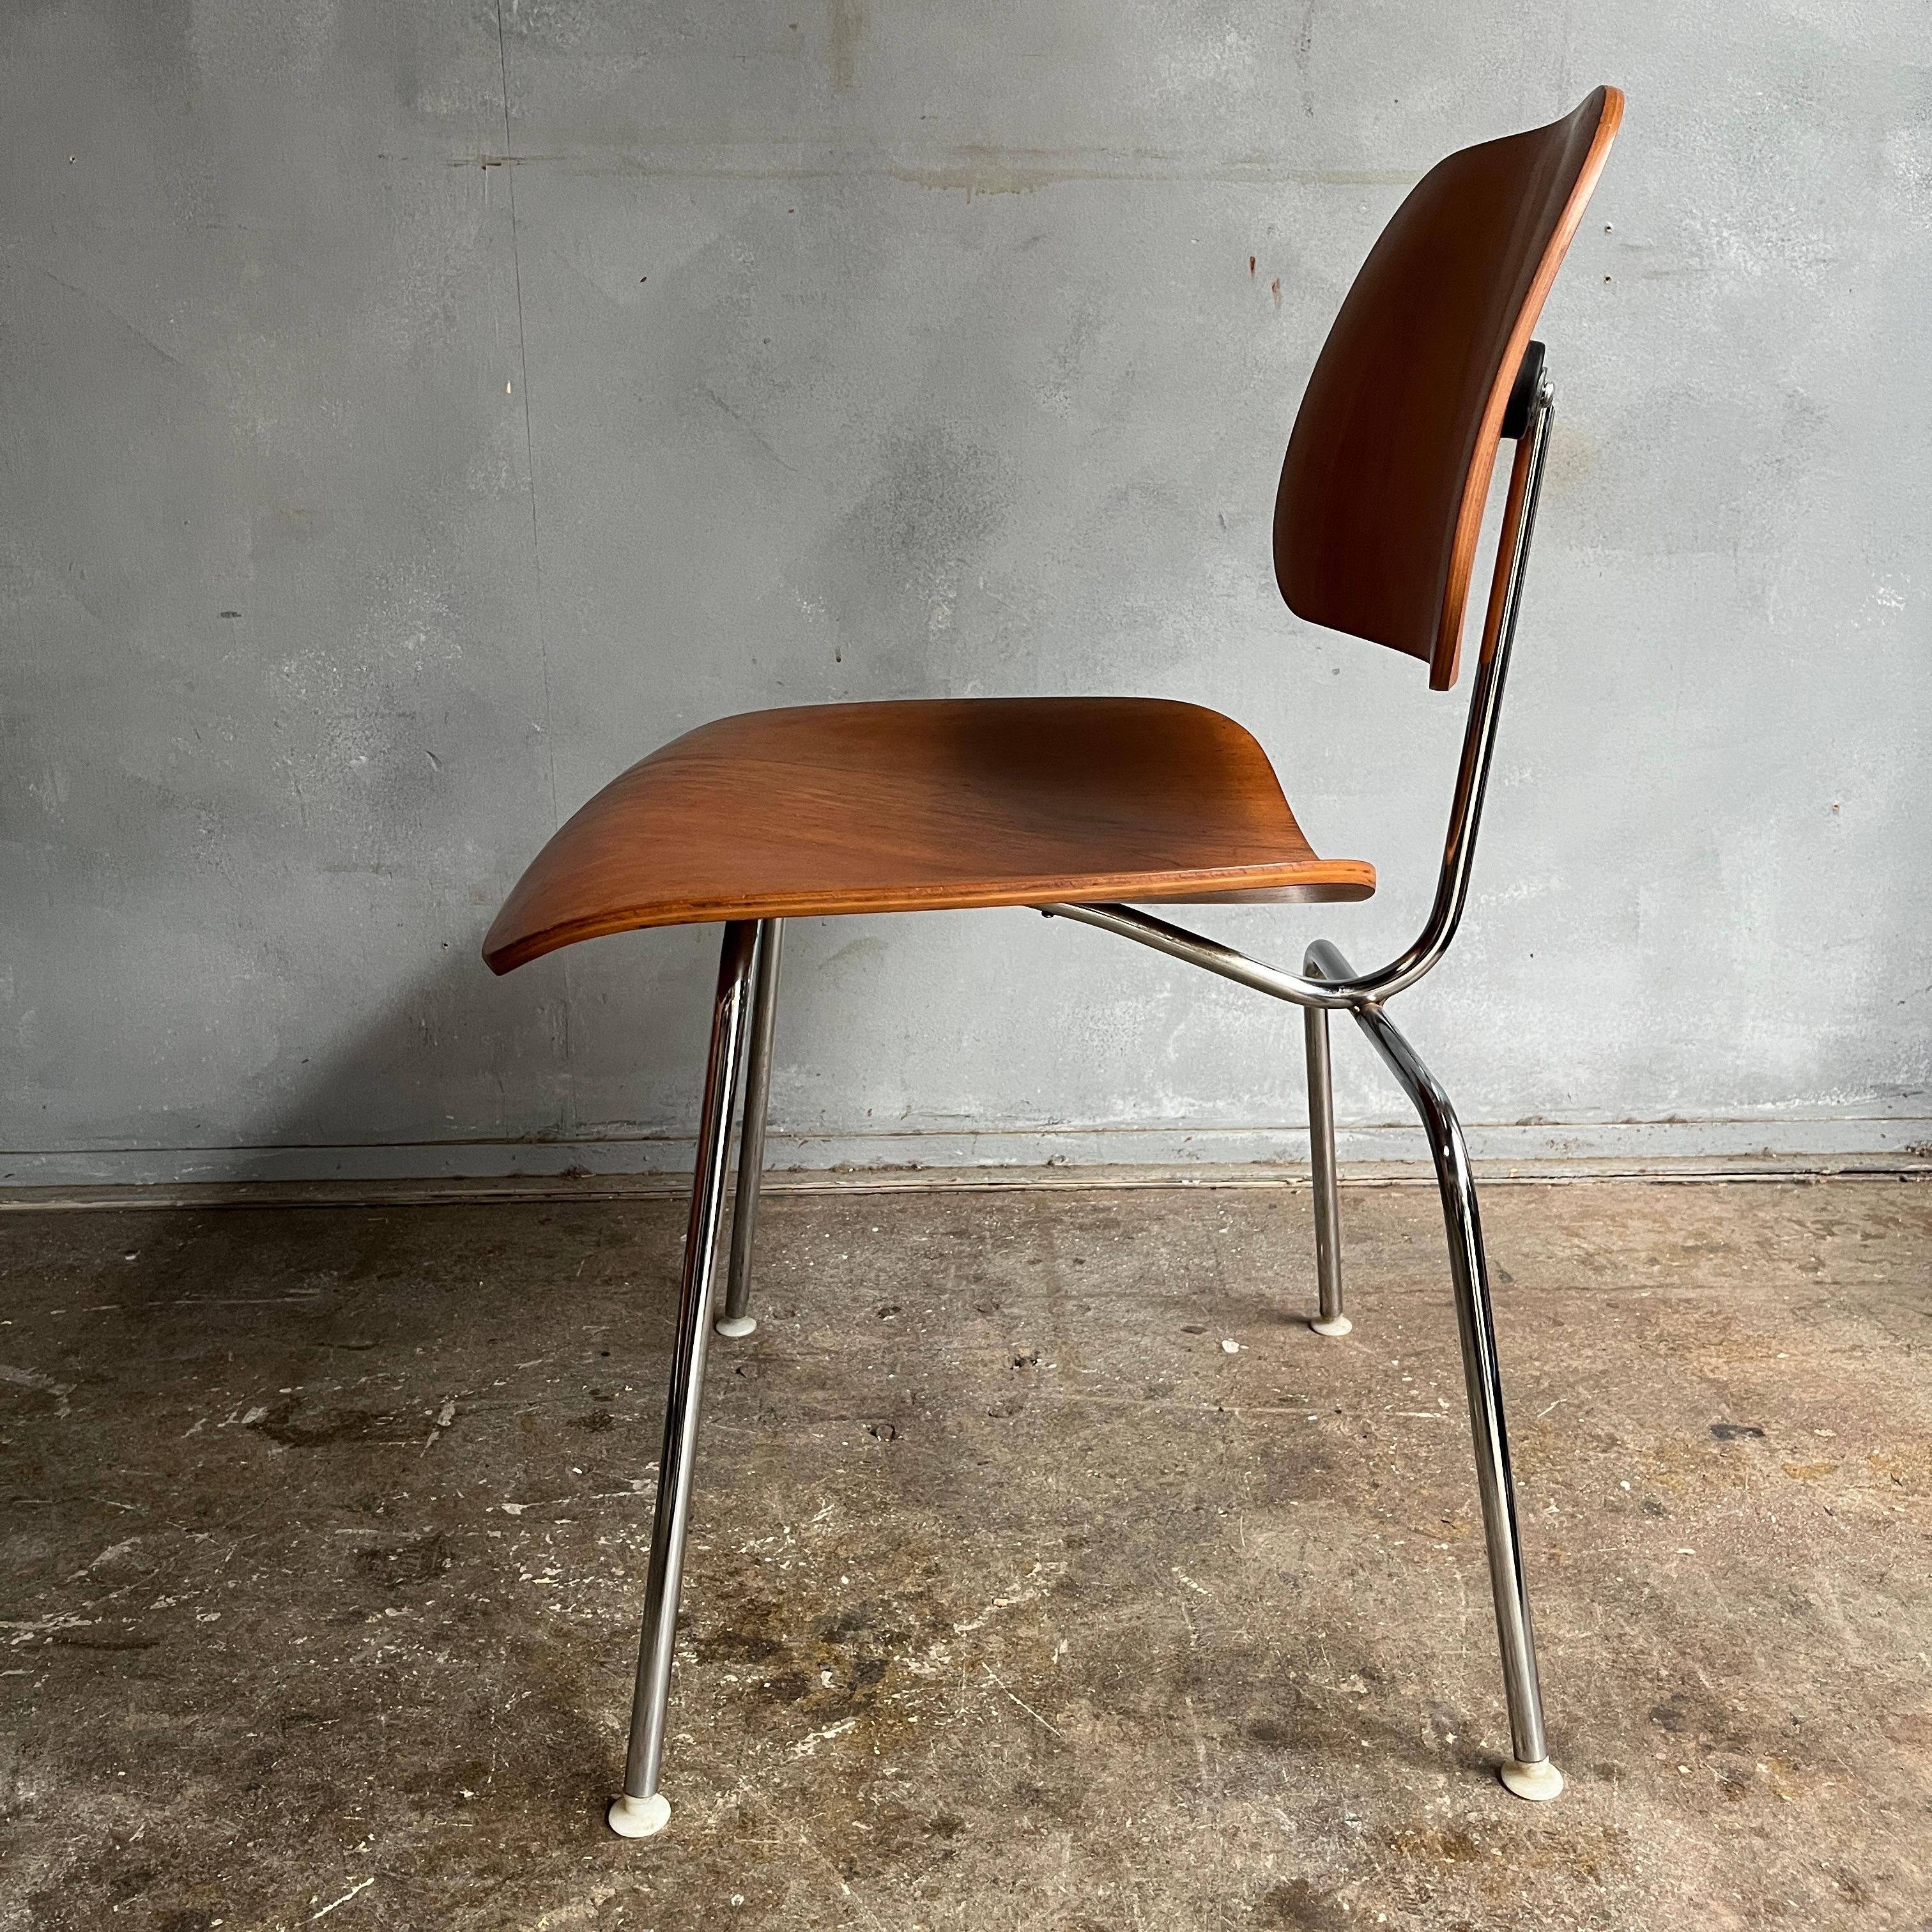 Stühle aus gebogenem Sperrholz, hergestellt von Herman Miller und entworfen von Charles und Ray Eames. Dieser Stuhl ist in großem Vintage-Zustand, zeigt besser als erwartet mit wenig Gebrauchsspuren. Natürlich zeigt einige schöne Alter und Patina